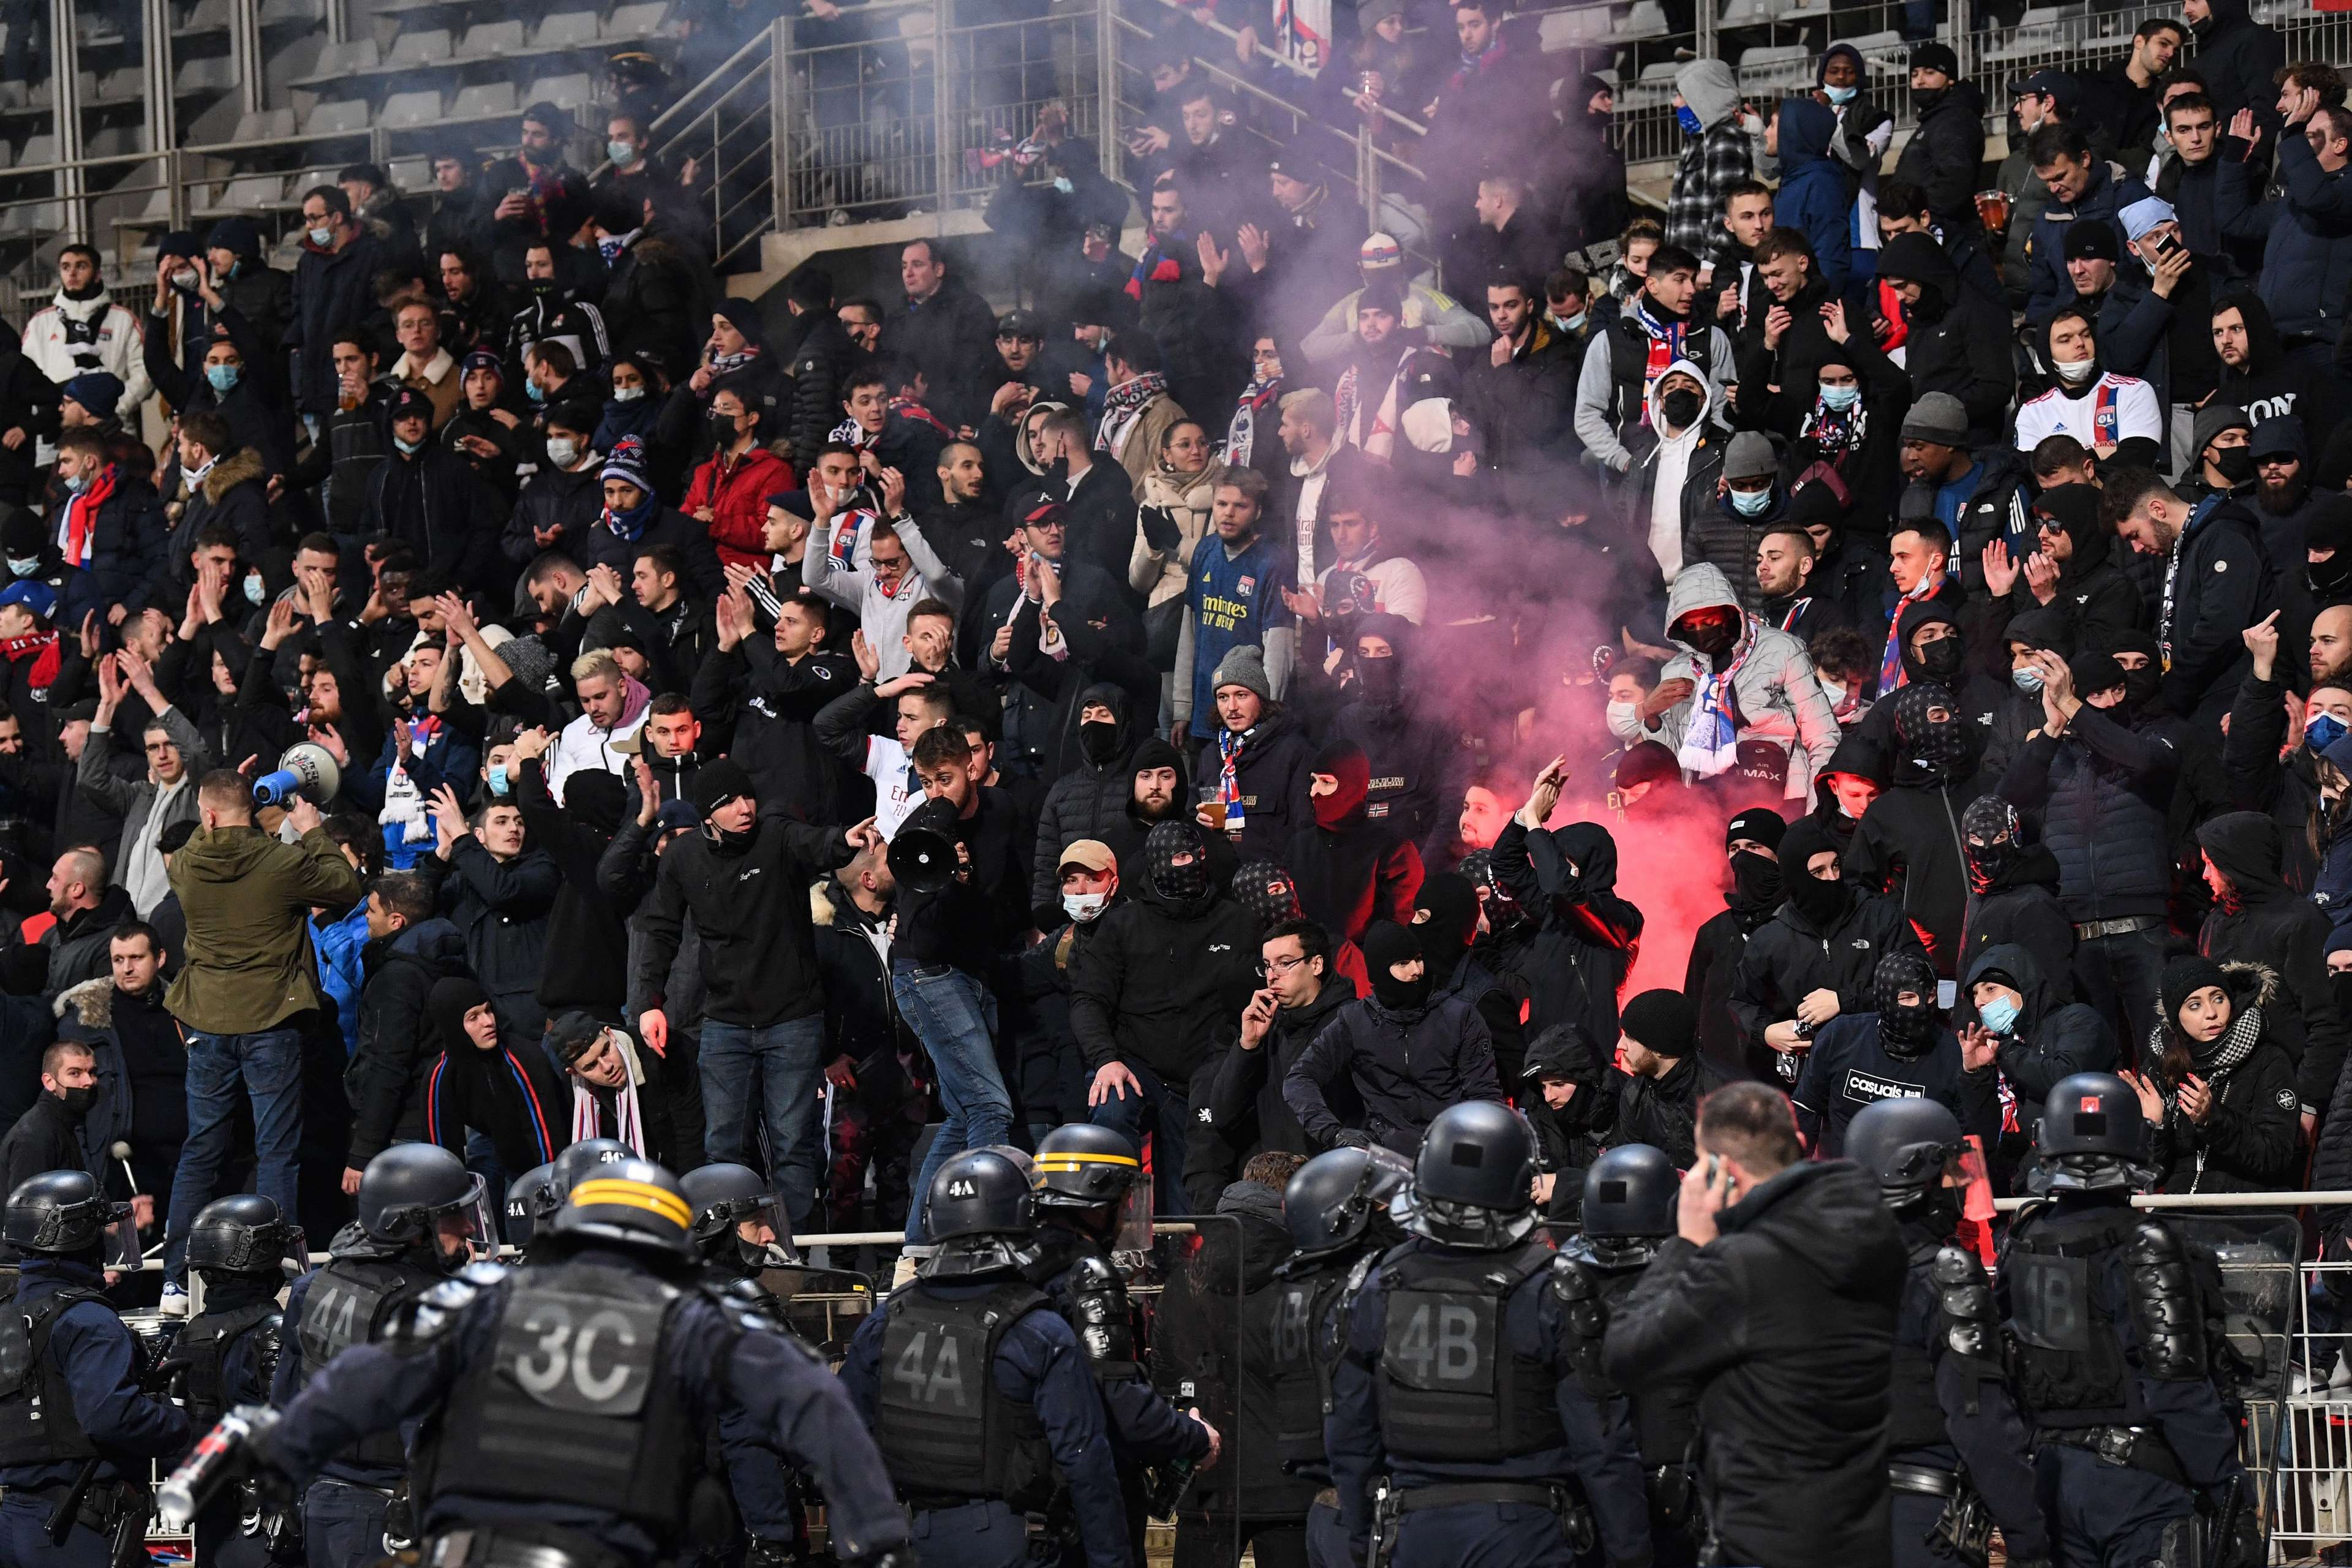 Paris FC-OL, Coupe de France, violence, supporters, 17122021